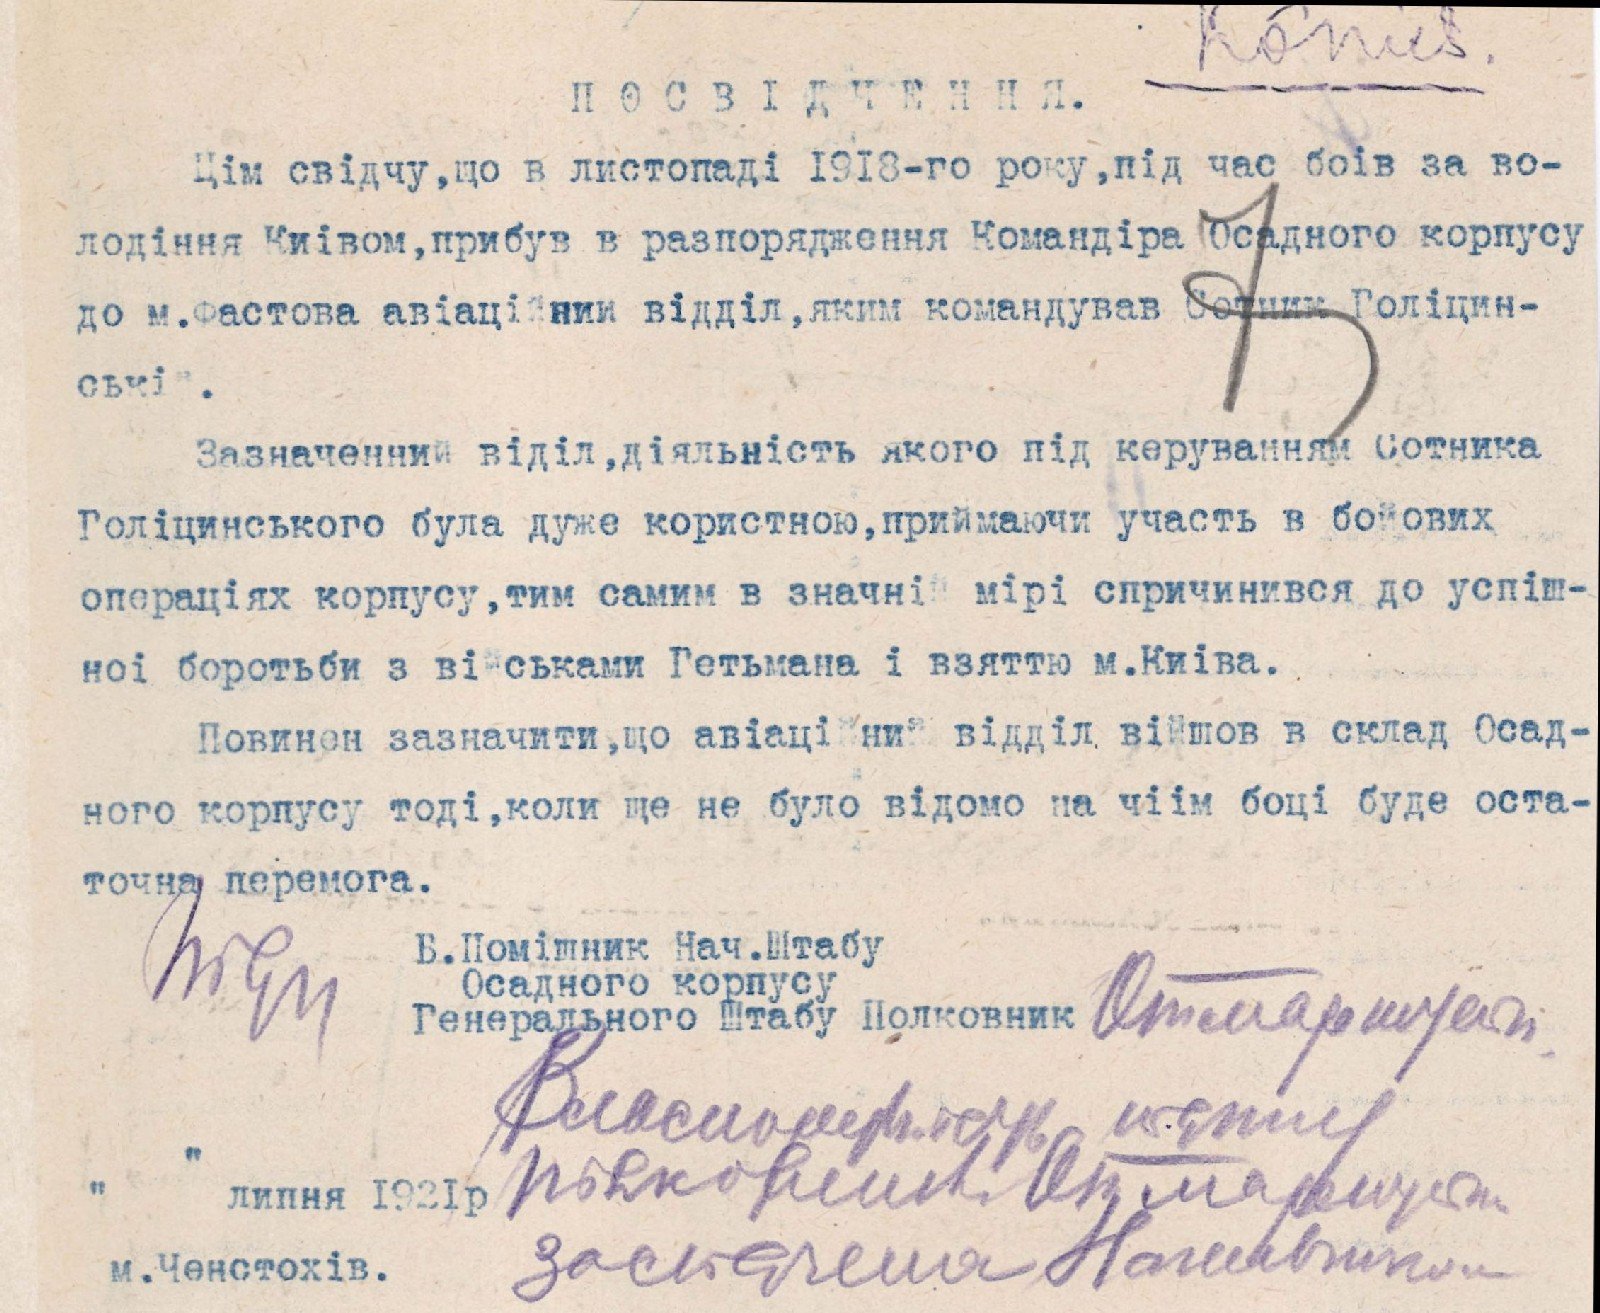 Посвідчення про дії авіаційного підрозділу, яким командував сотник Голіцинський, в районі Києва й Фастова у листопаді 1928 р. Липень 1921 р. 